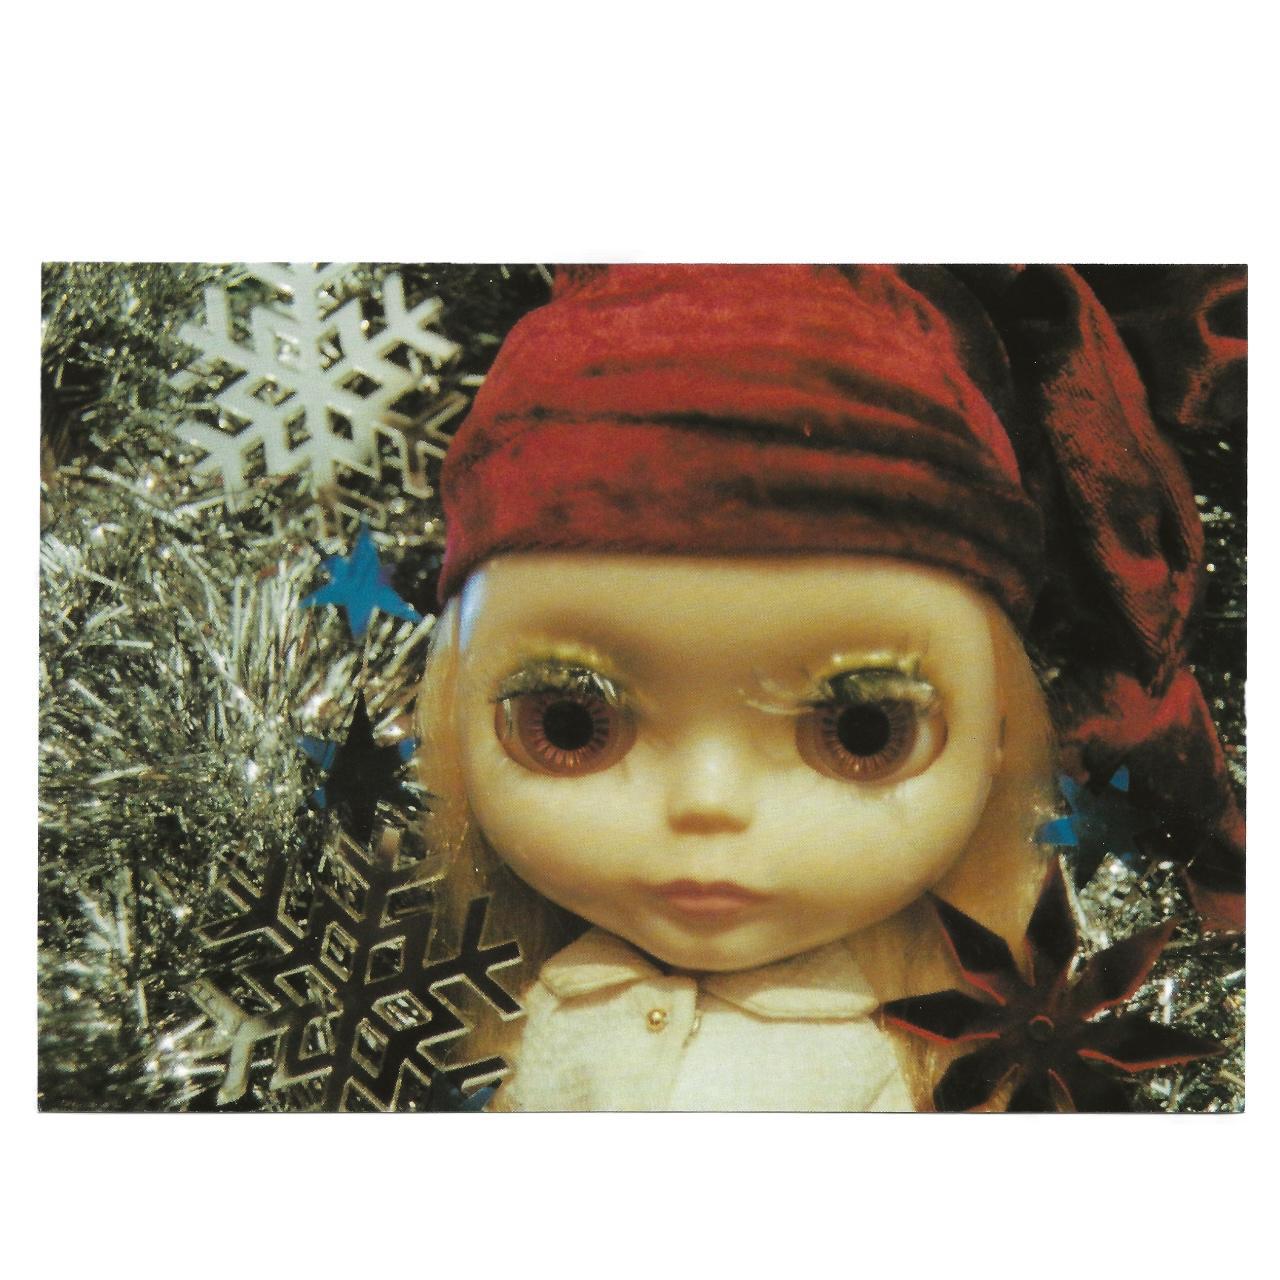 2002 Rare Blythe Doll Art Post Card